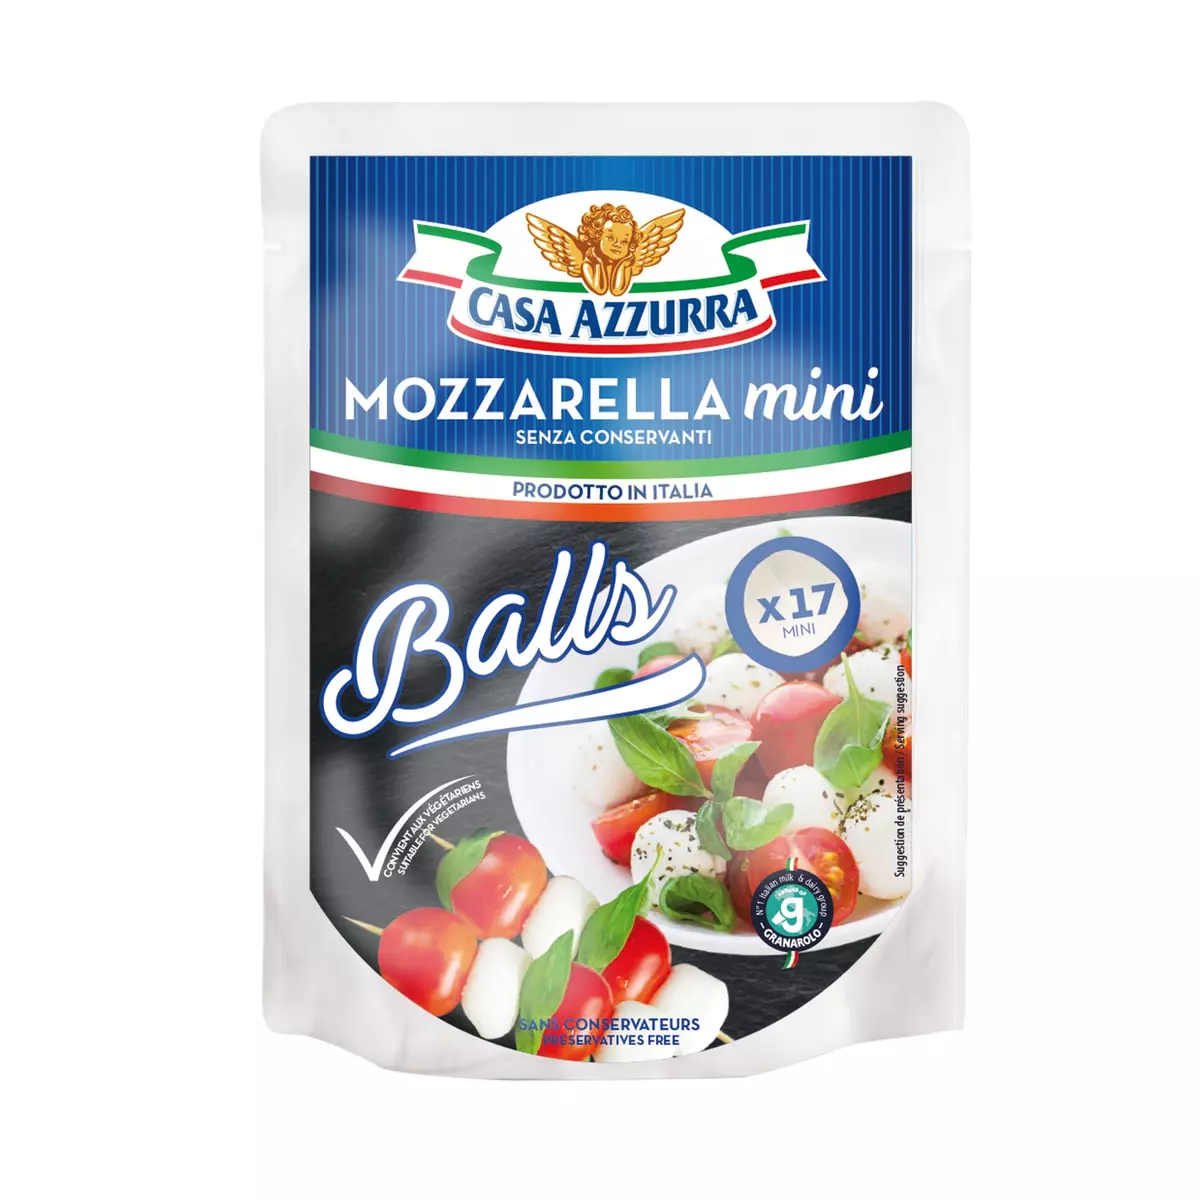 CASA AZZURRA Mozzarella mini balls 150g